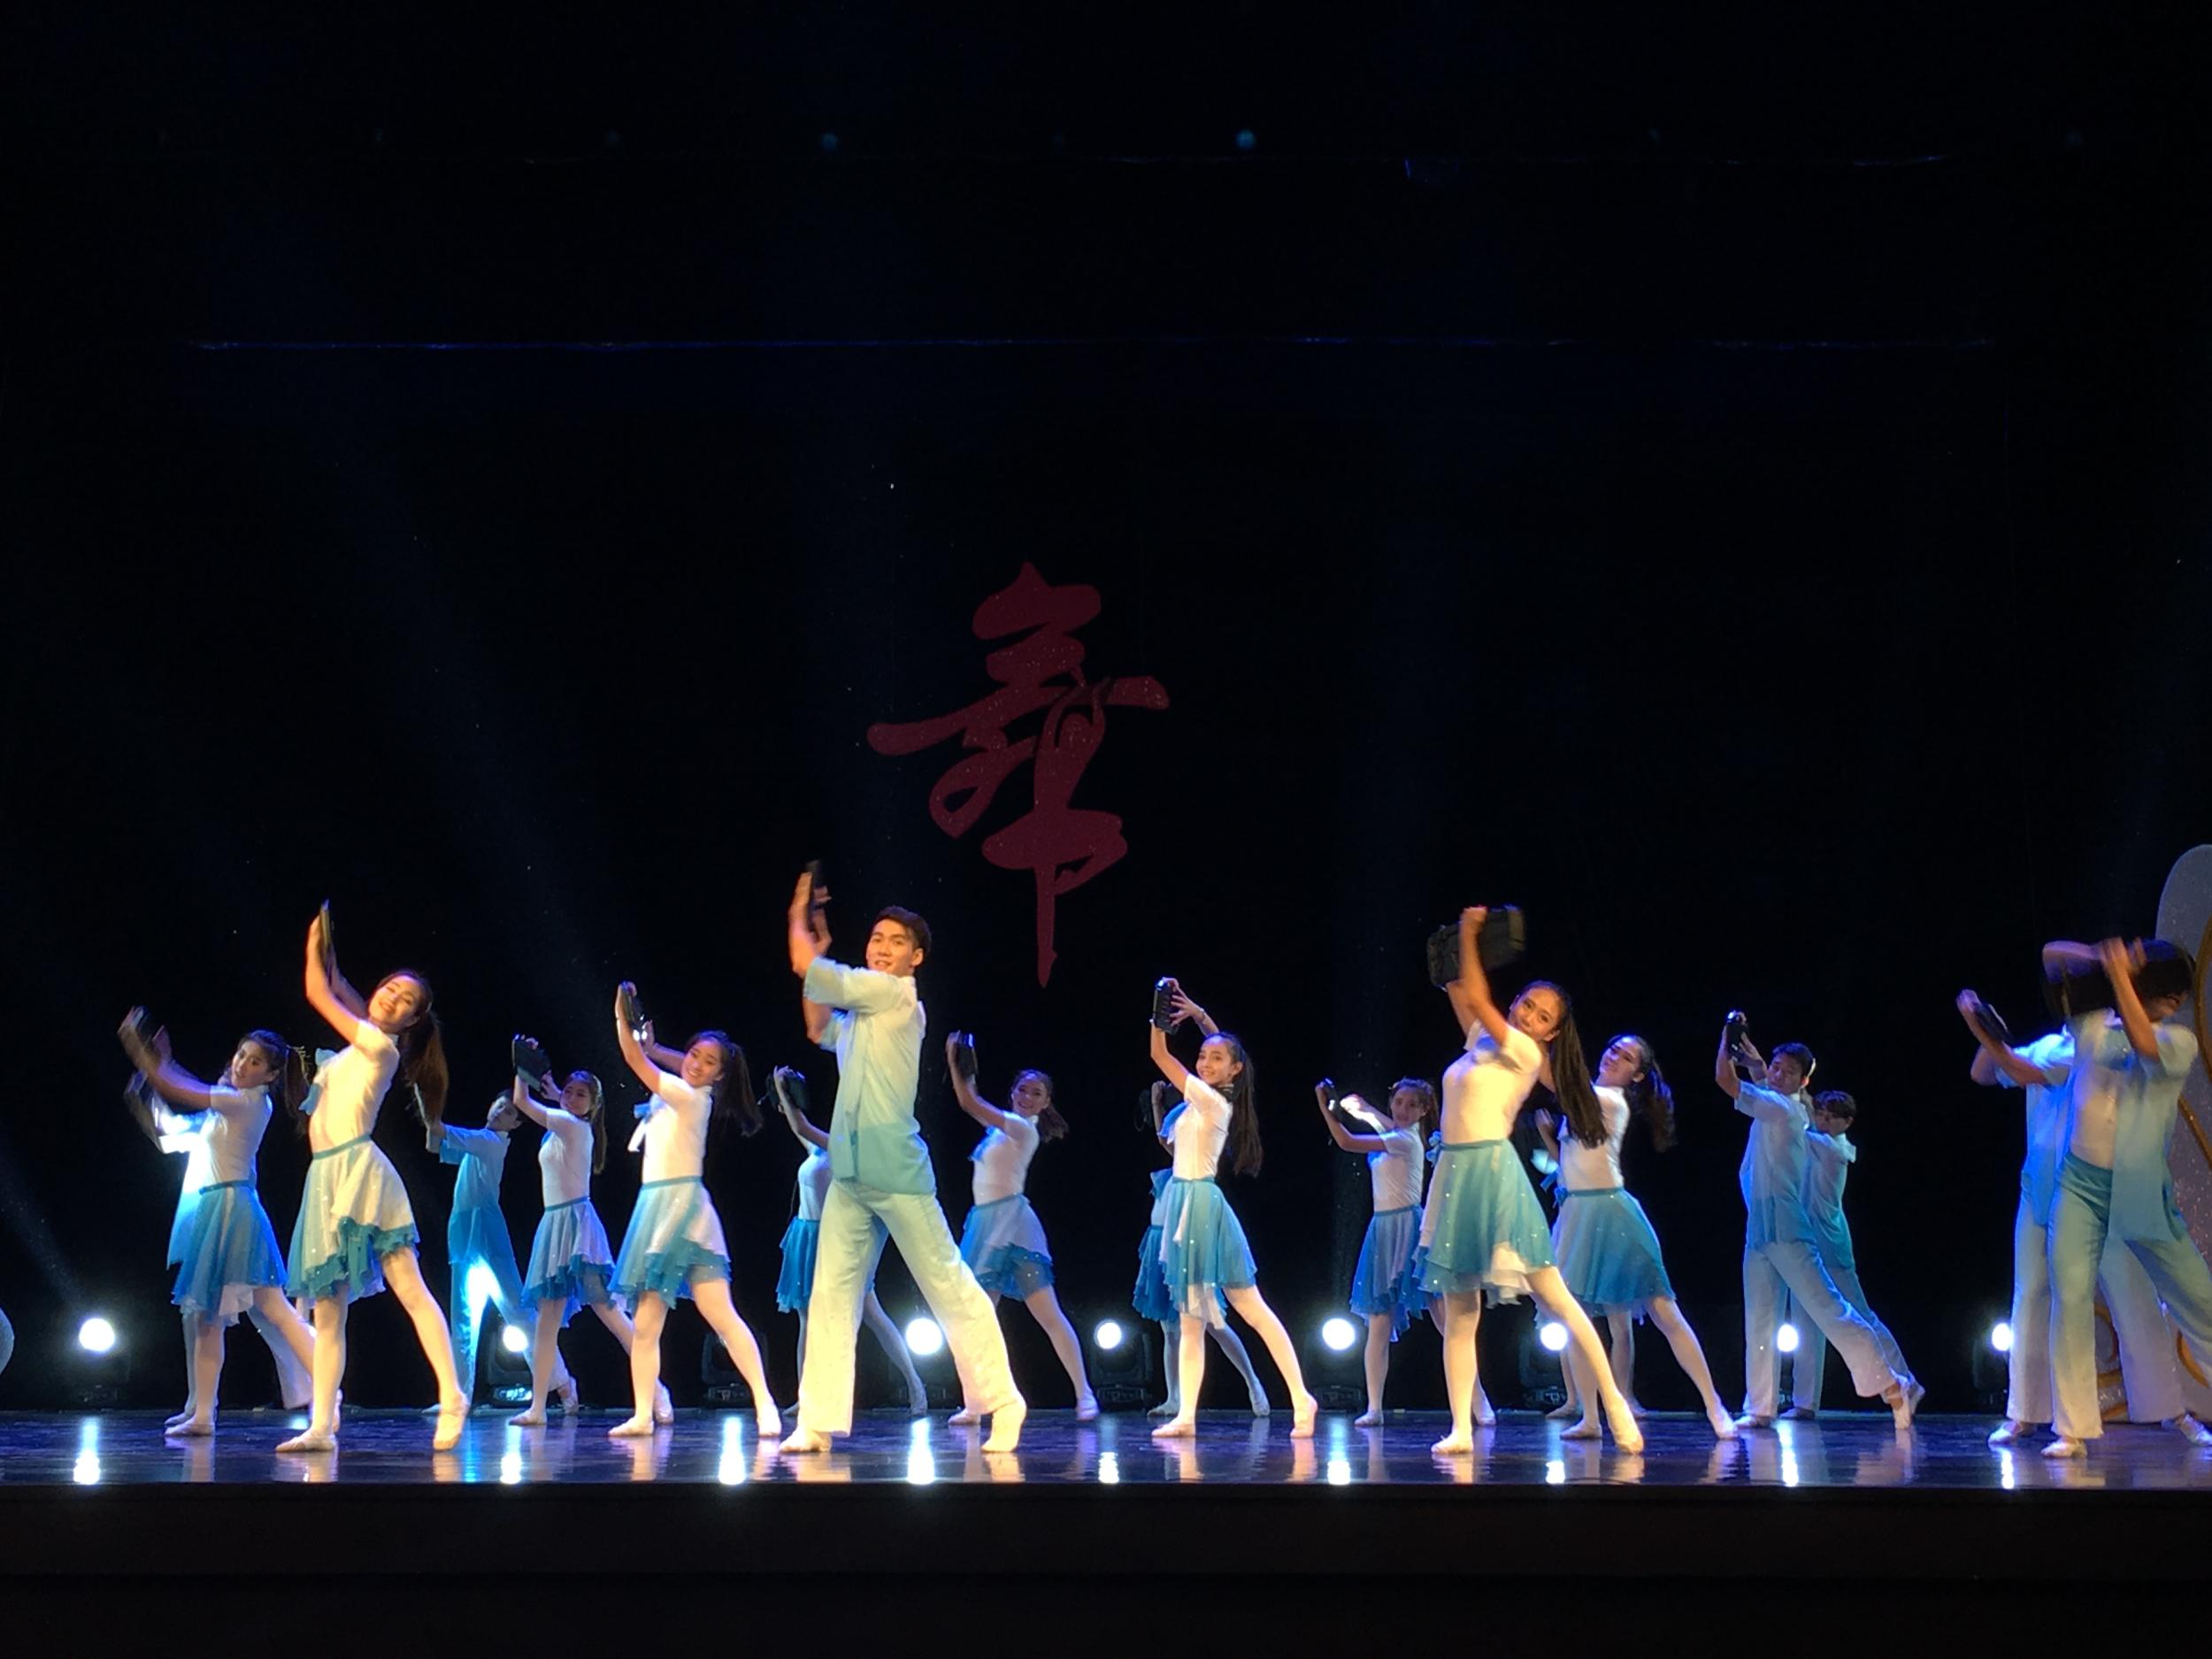 温州市第三届电视舞蹈大赛总决赛昨日举行 - 教育频道 - 温州网